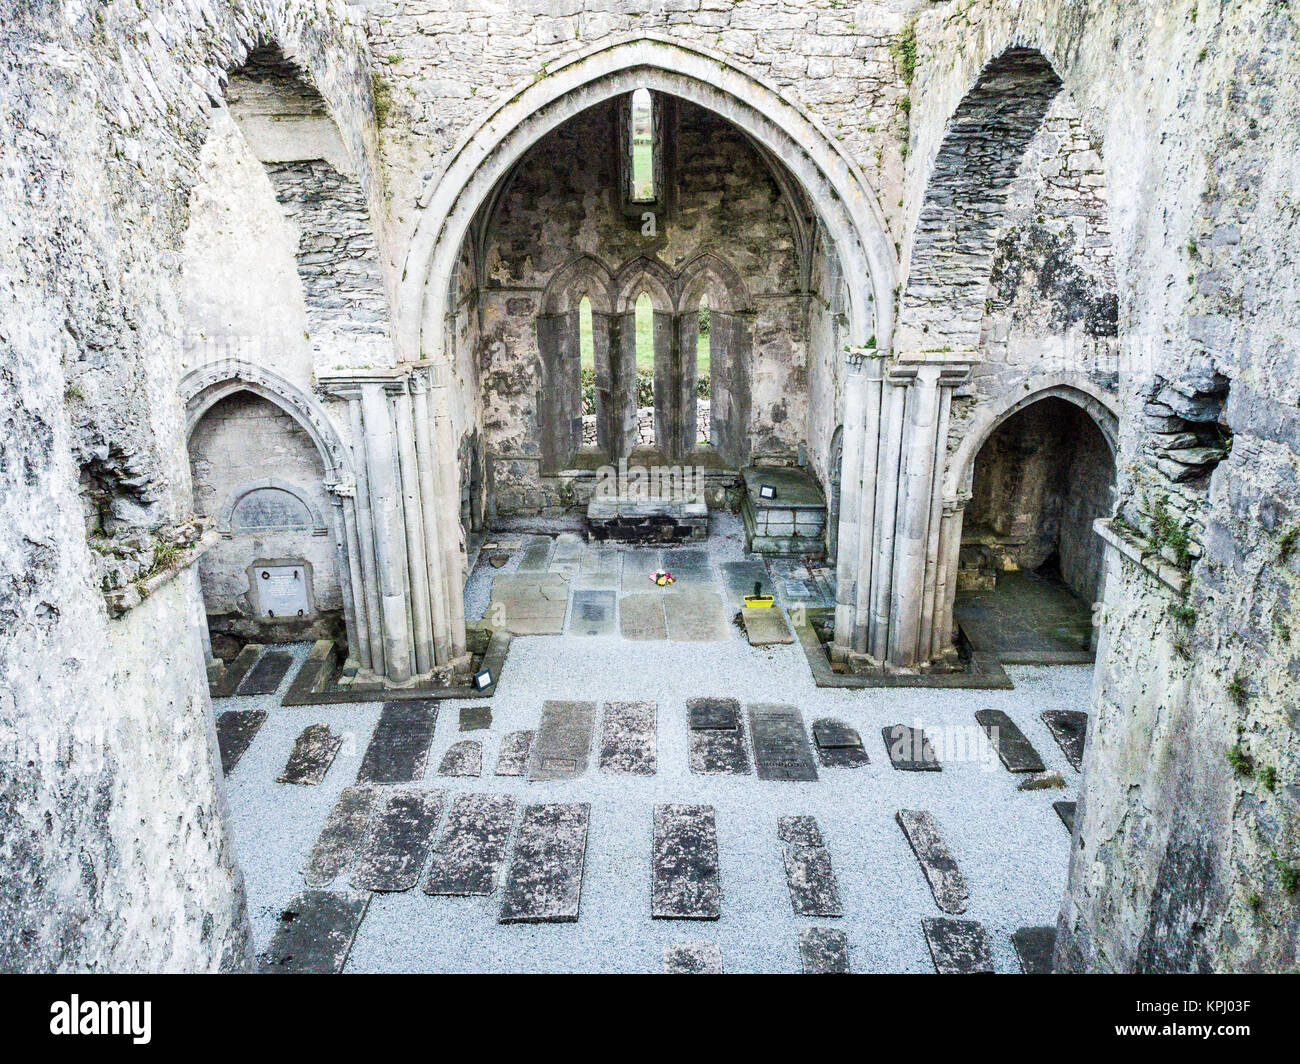 Corcomroe Abbey, vicino Bellharbor, Burren, Repubblica di Irlanda Foto Stock